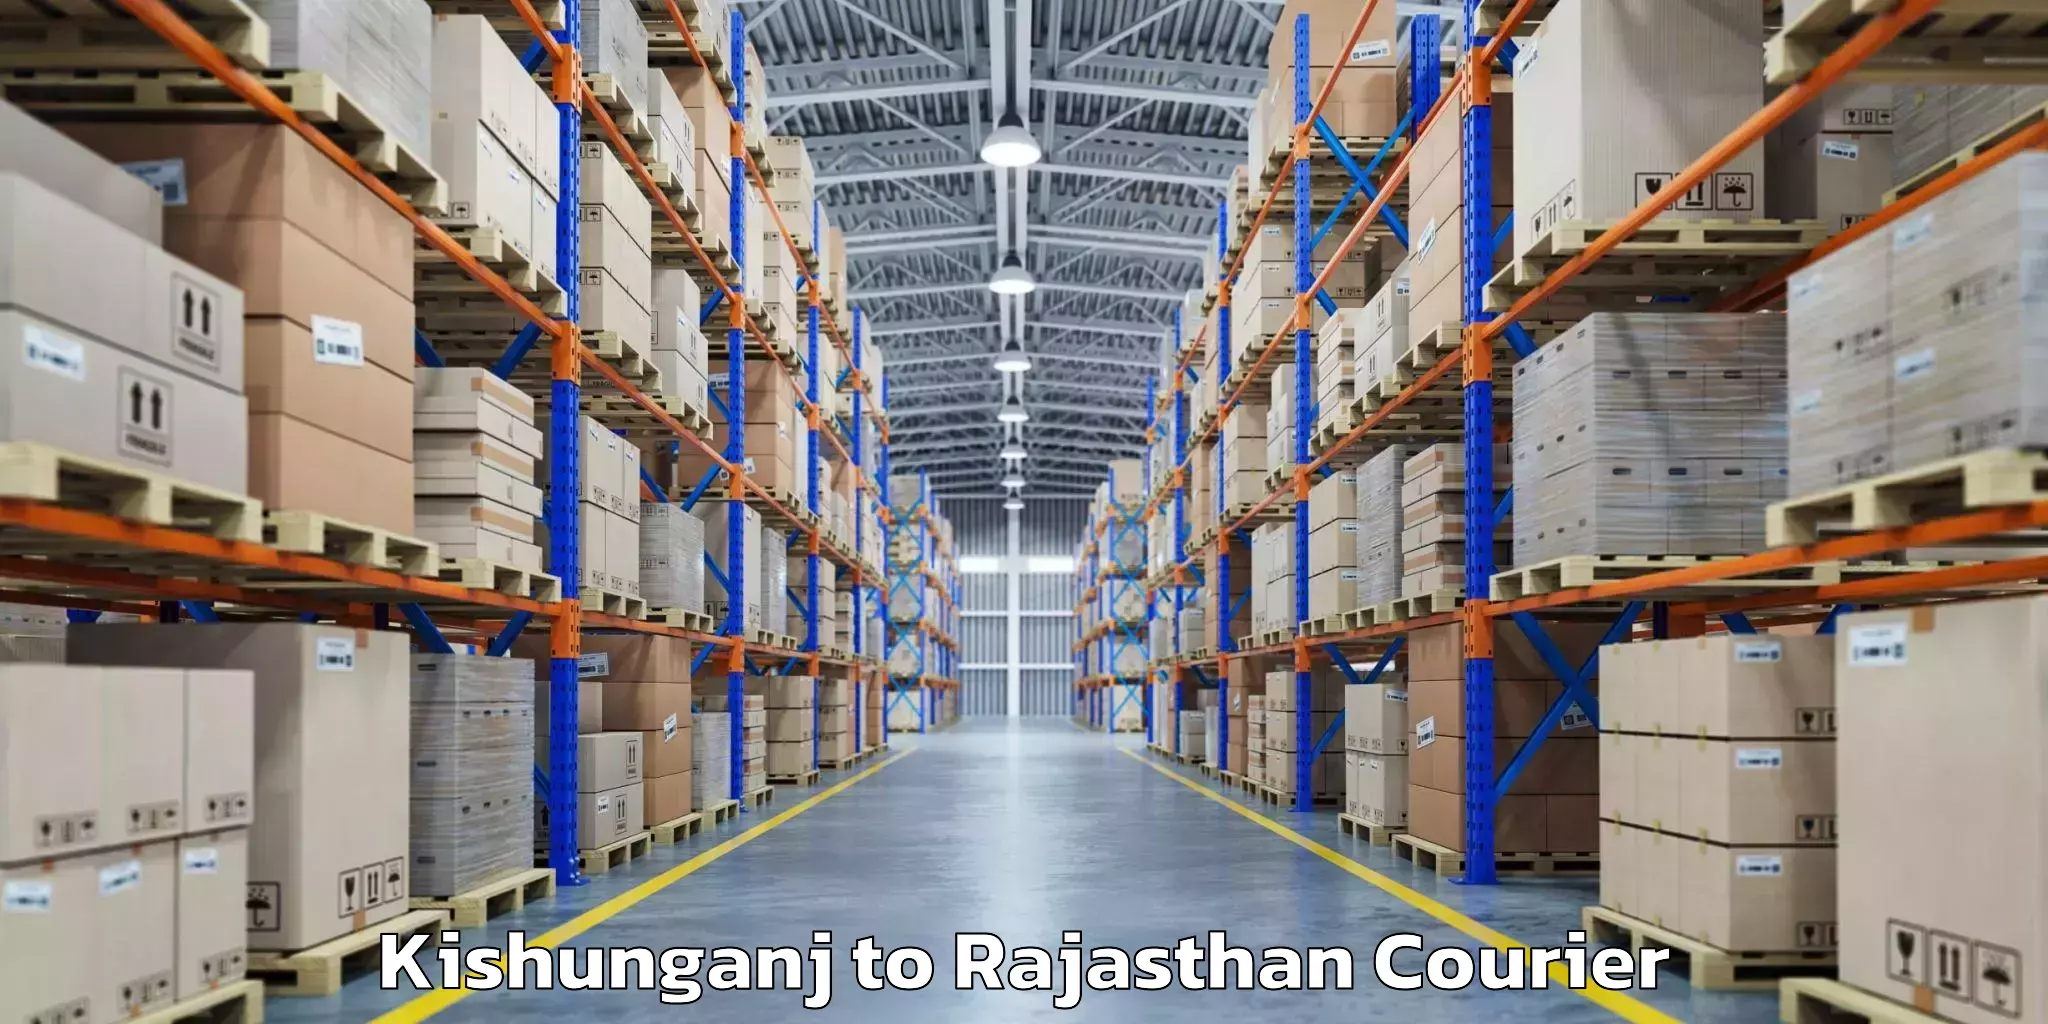 Baggage transport technology Kishunganj to Pratapgarh Rajasthan